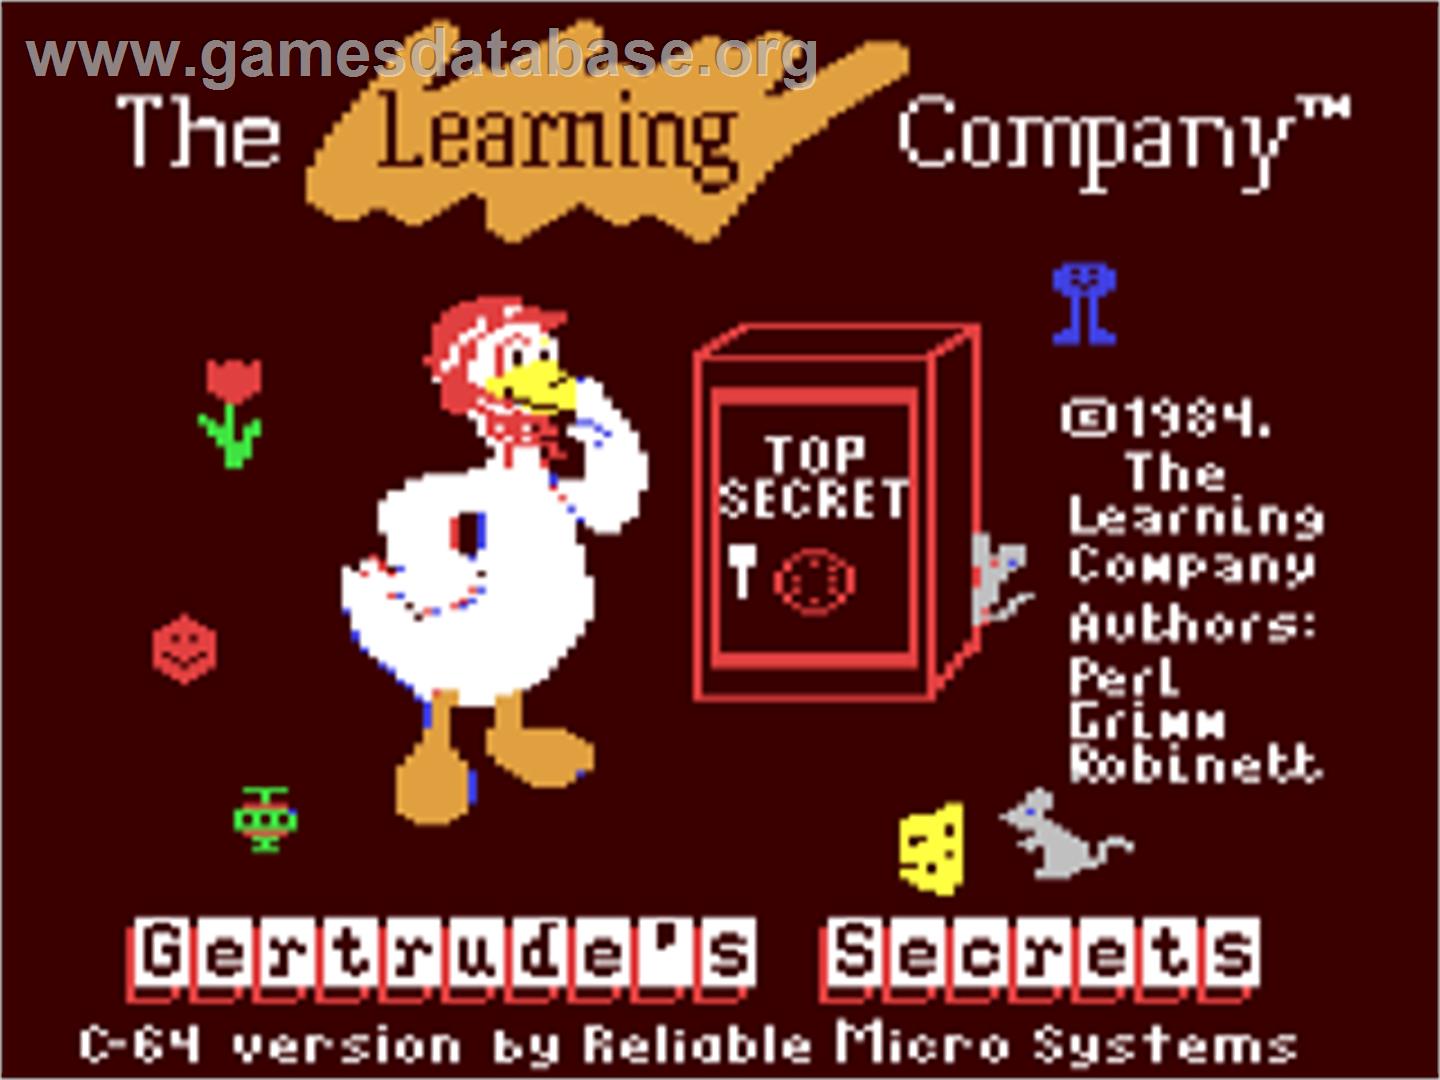 Gertrude's Secrets - Commodore 64 - Artwork - Title Screen